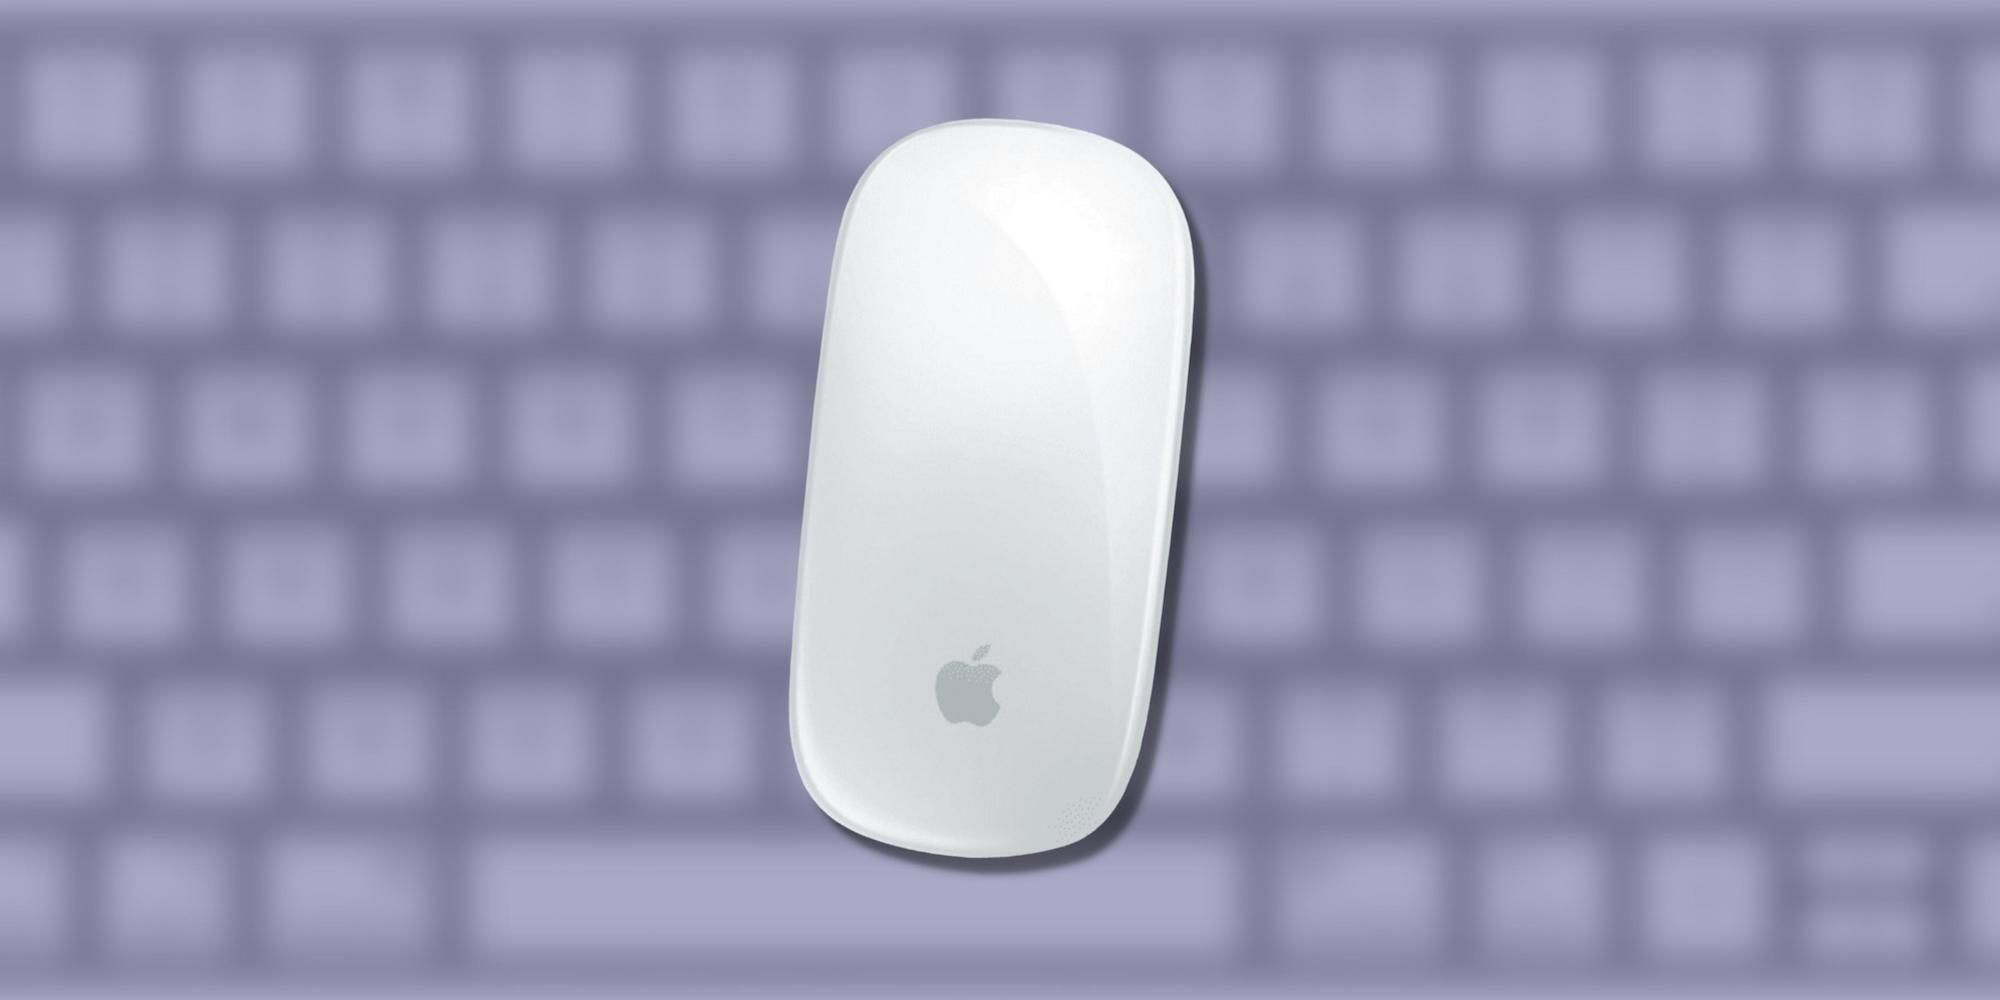 Apple está trabajando en un mouse con llave extraíble, así es como podría funcionar